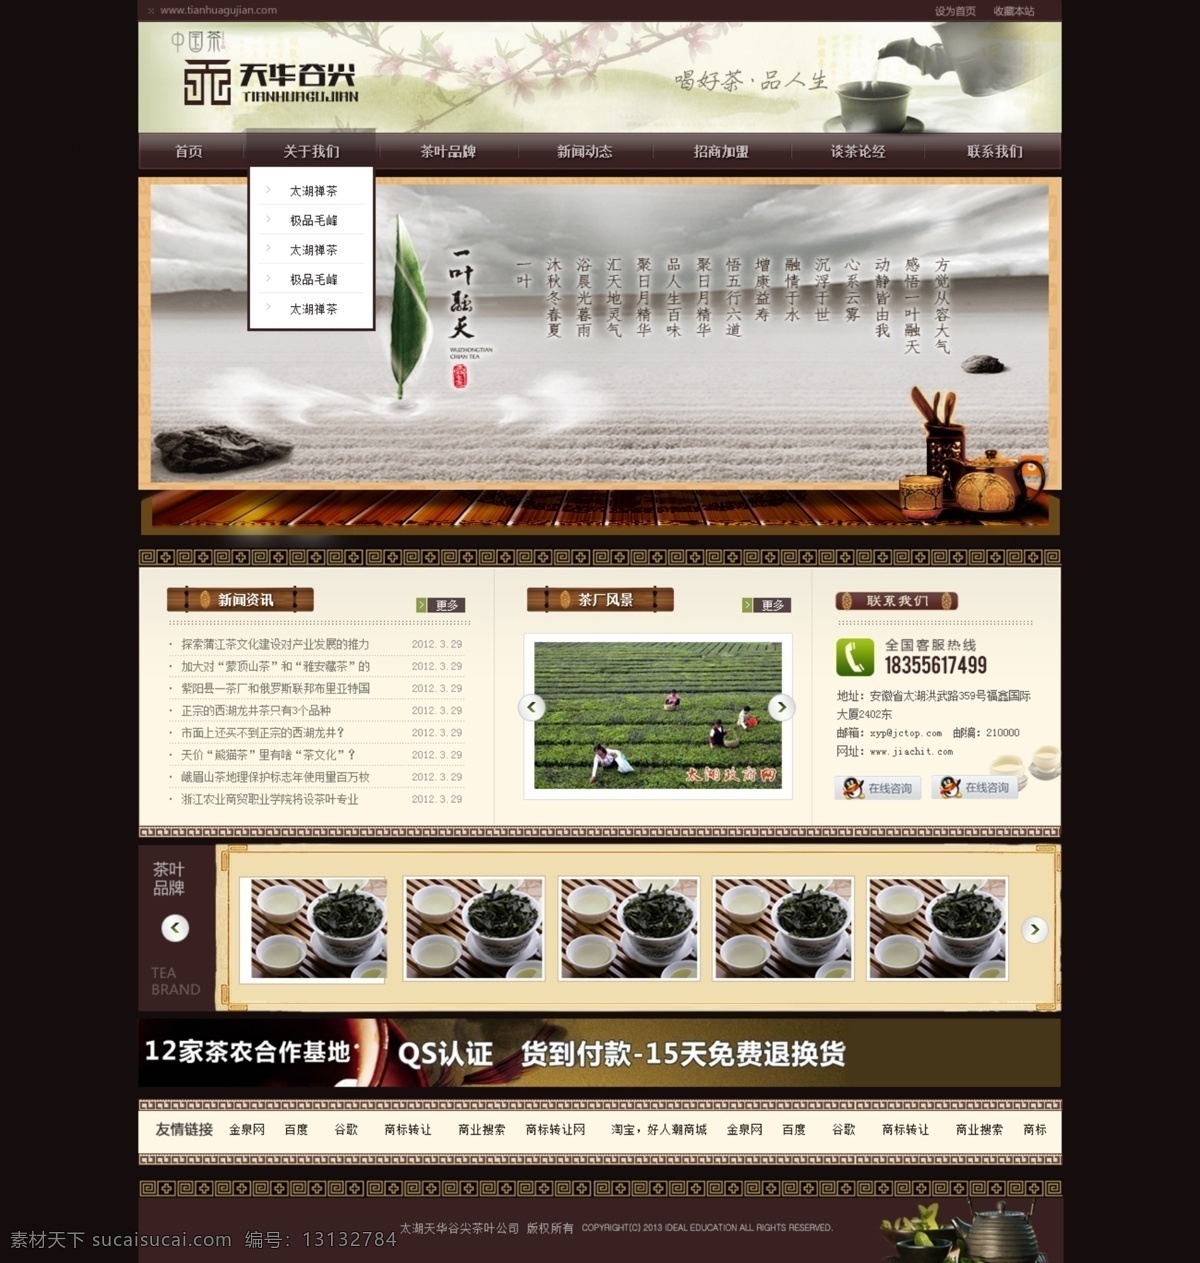 茶叶 大气 高档 褐色 网页模板 网站 源文件 中文模板 模板下载 茶叶网站 psd源文件 餐饮素材